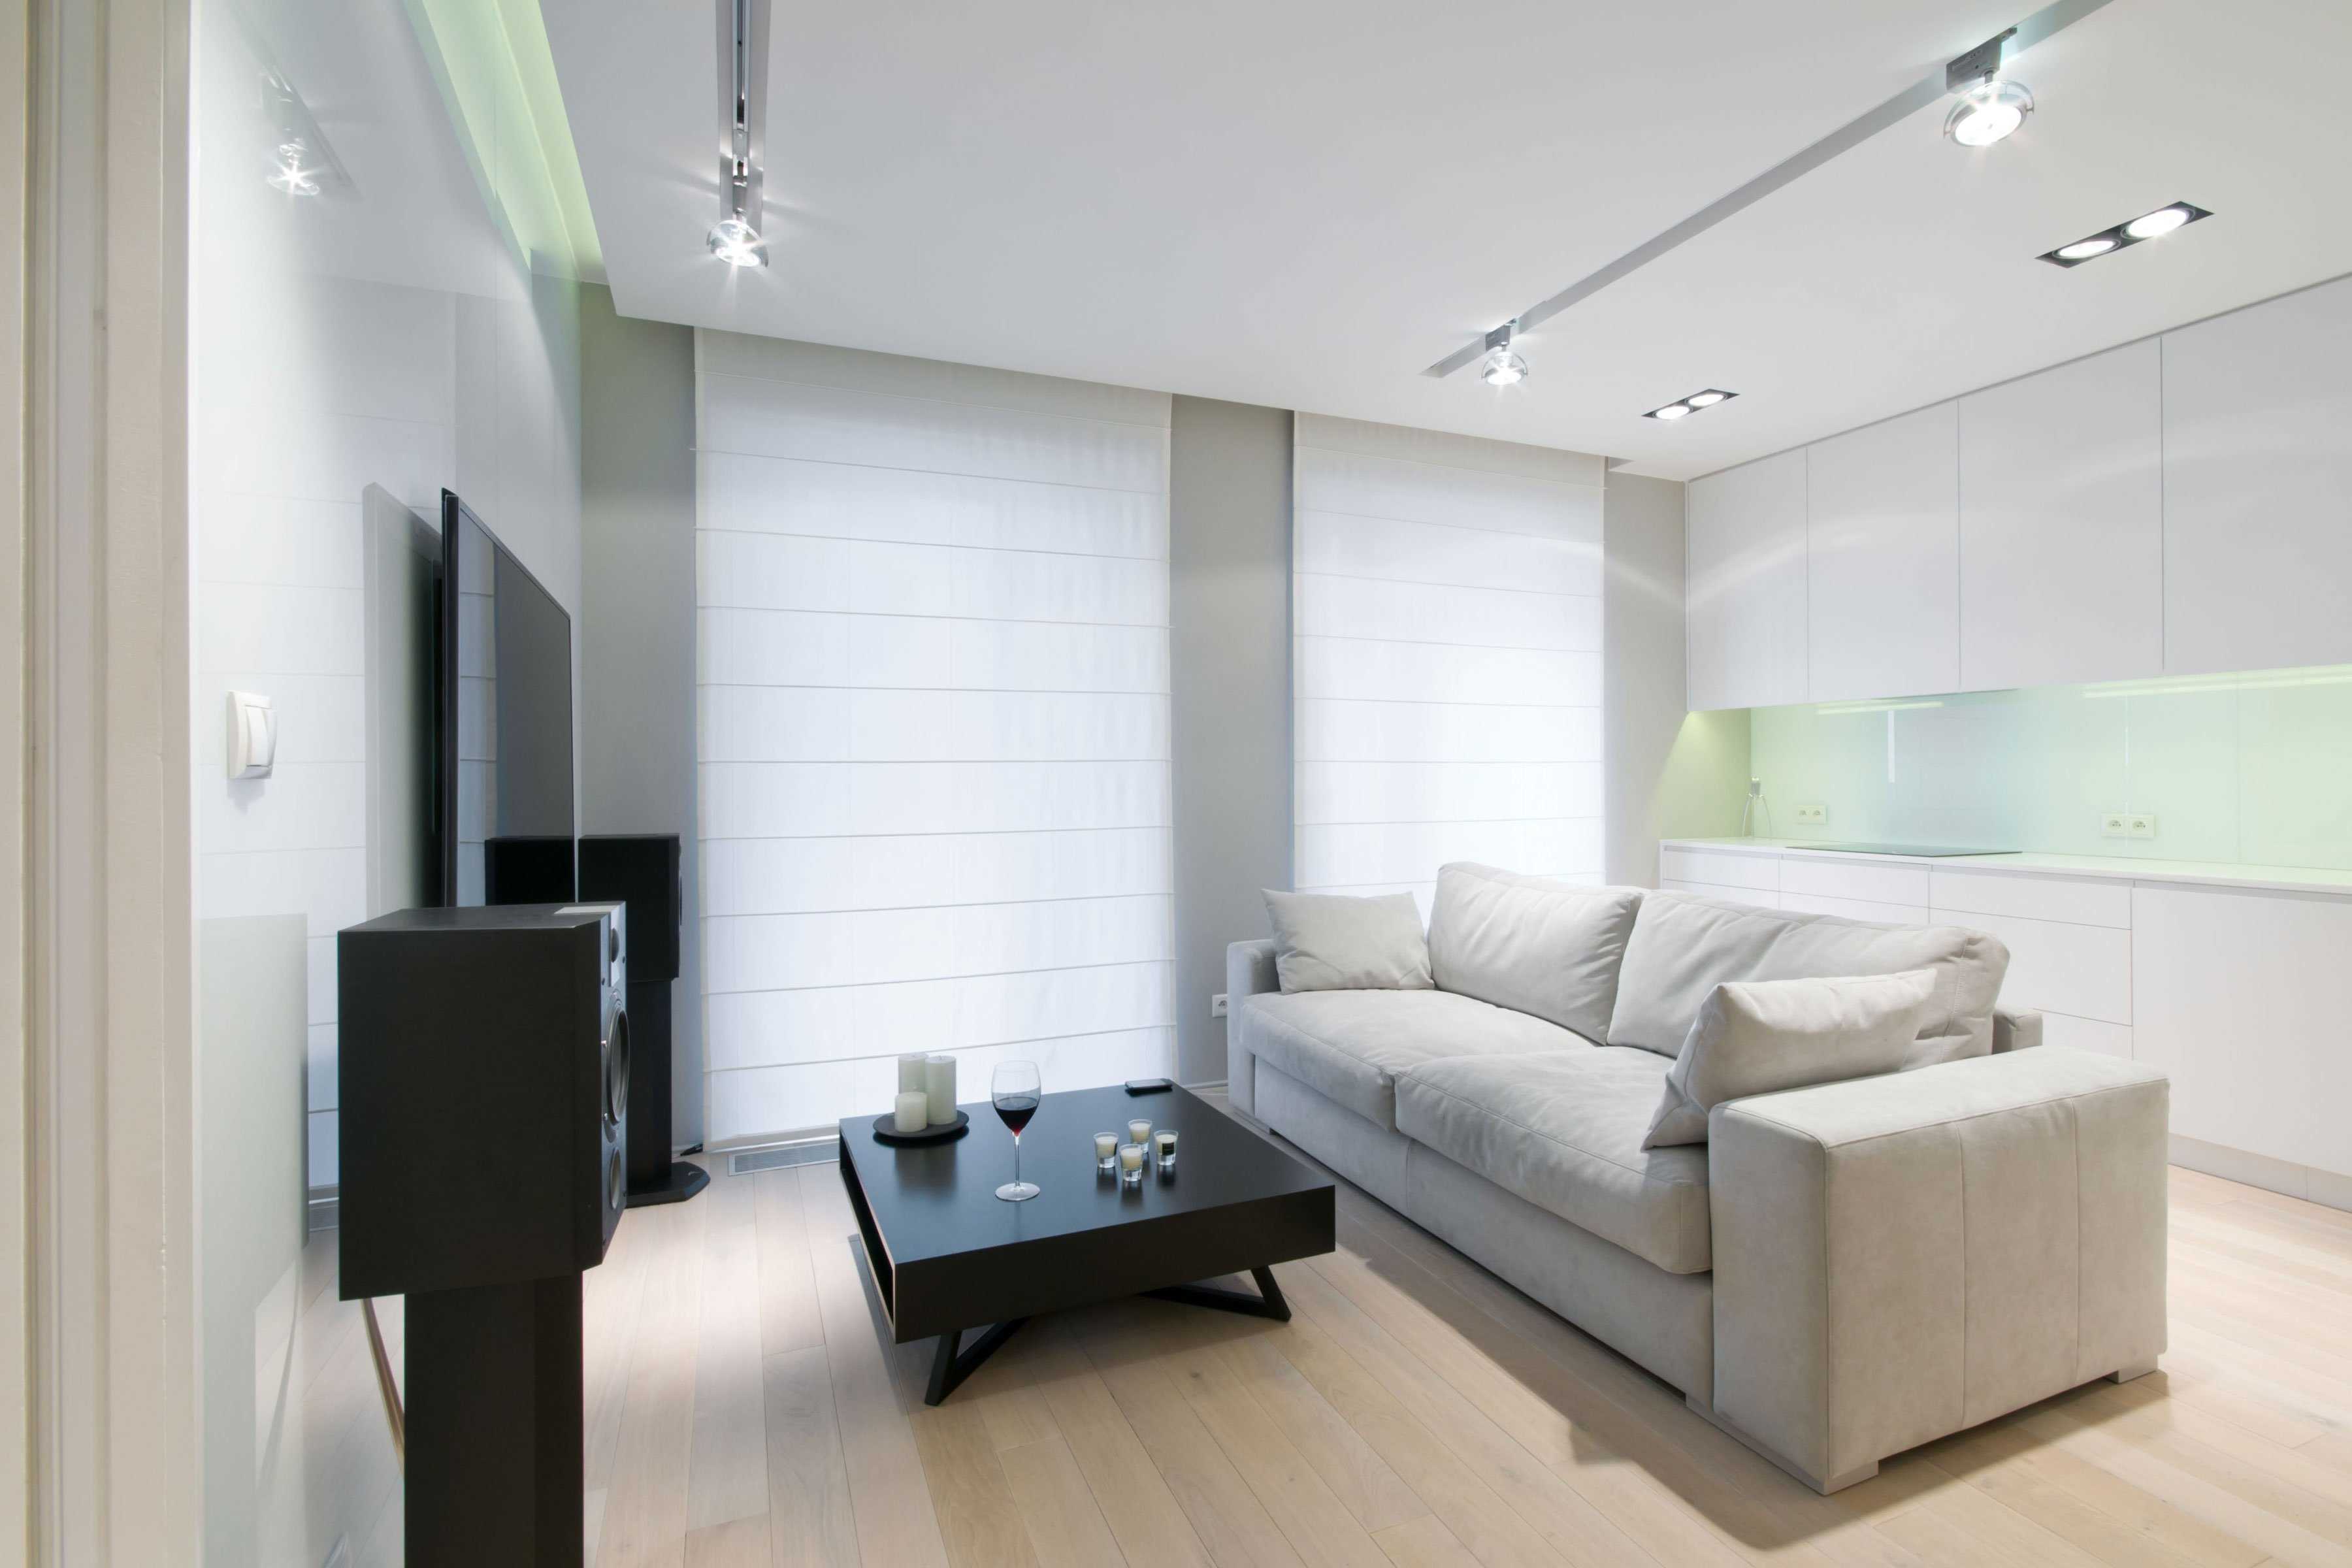 version du décor lumineux de l'appartement dans des couleurs vives dans un style moderne